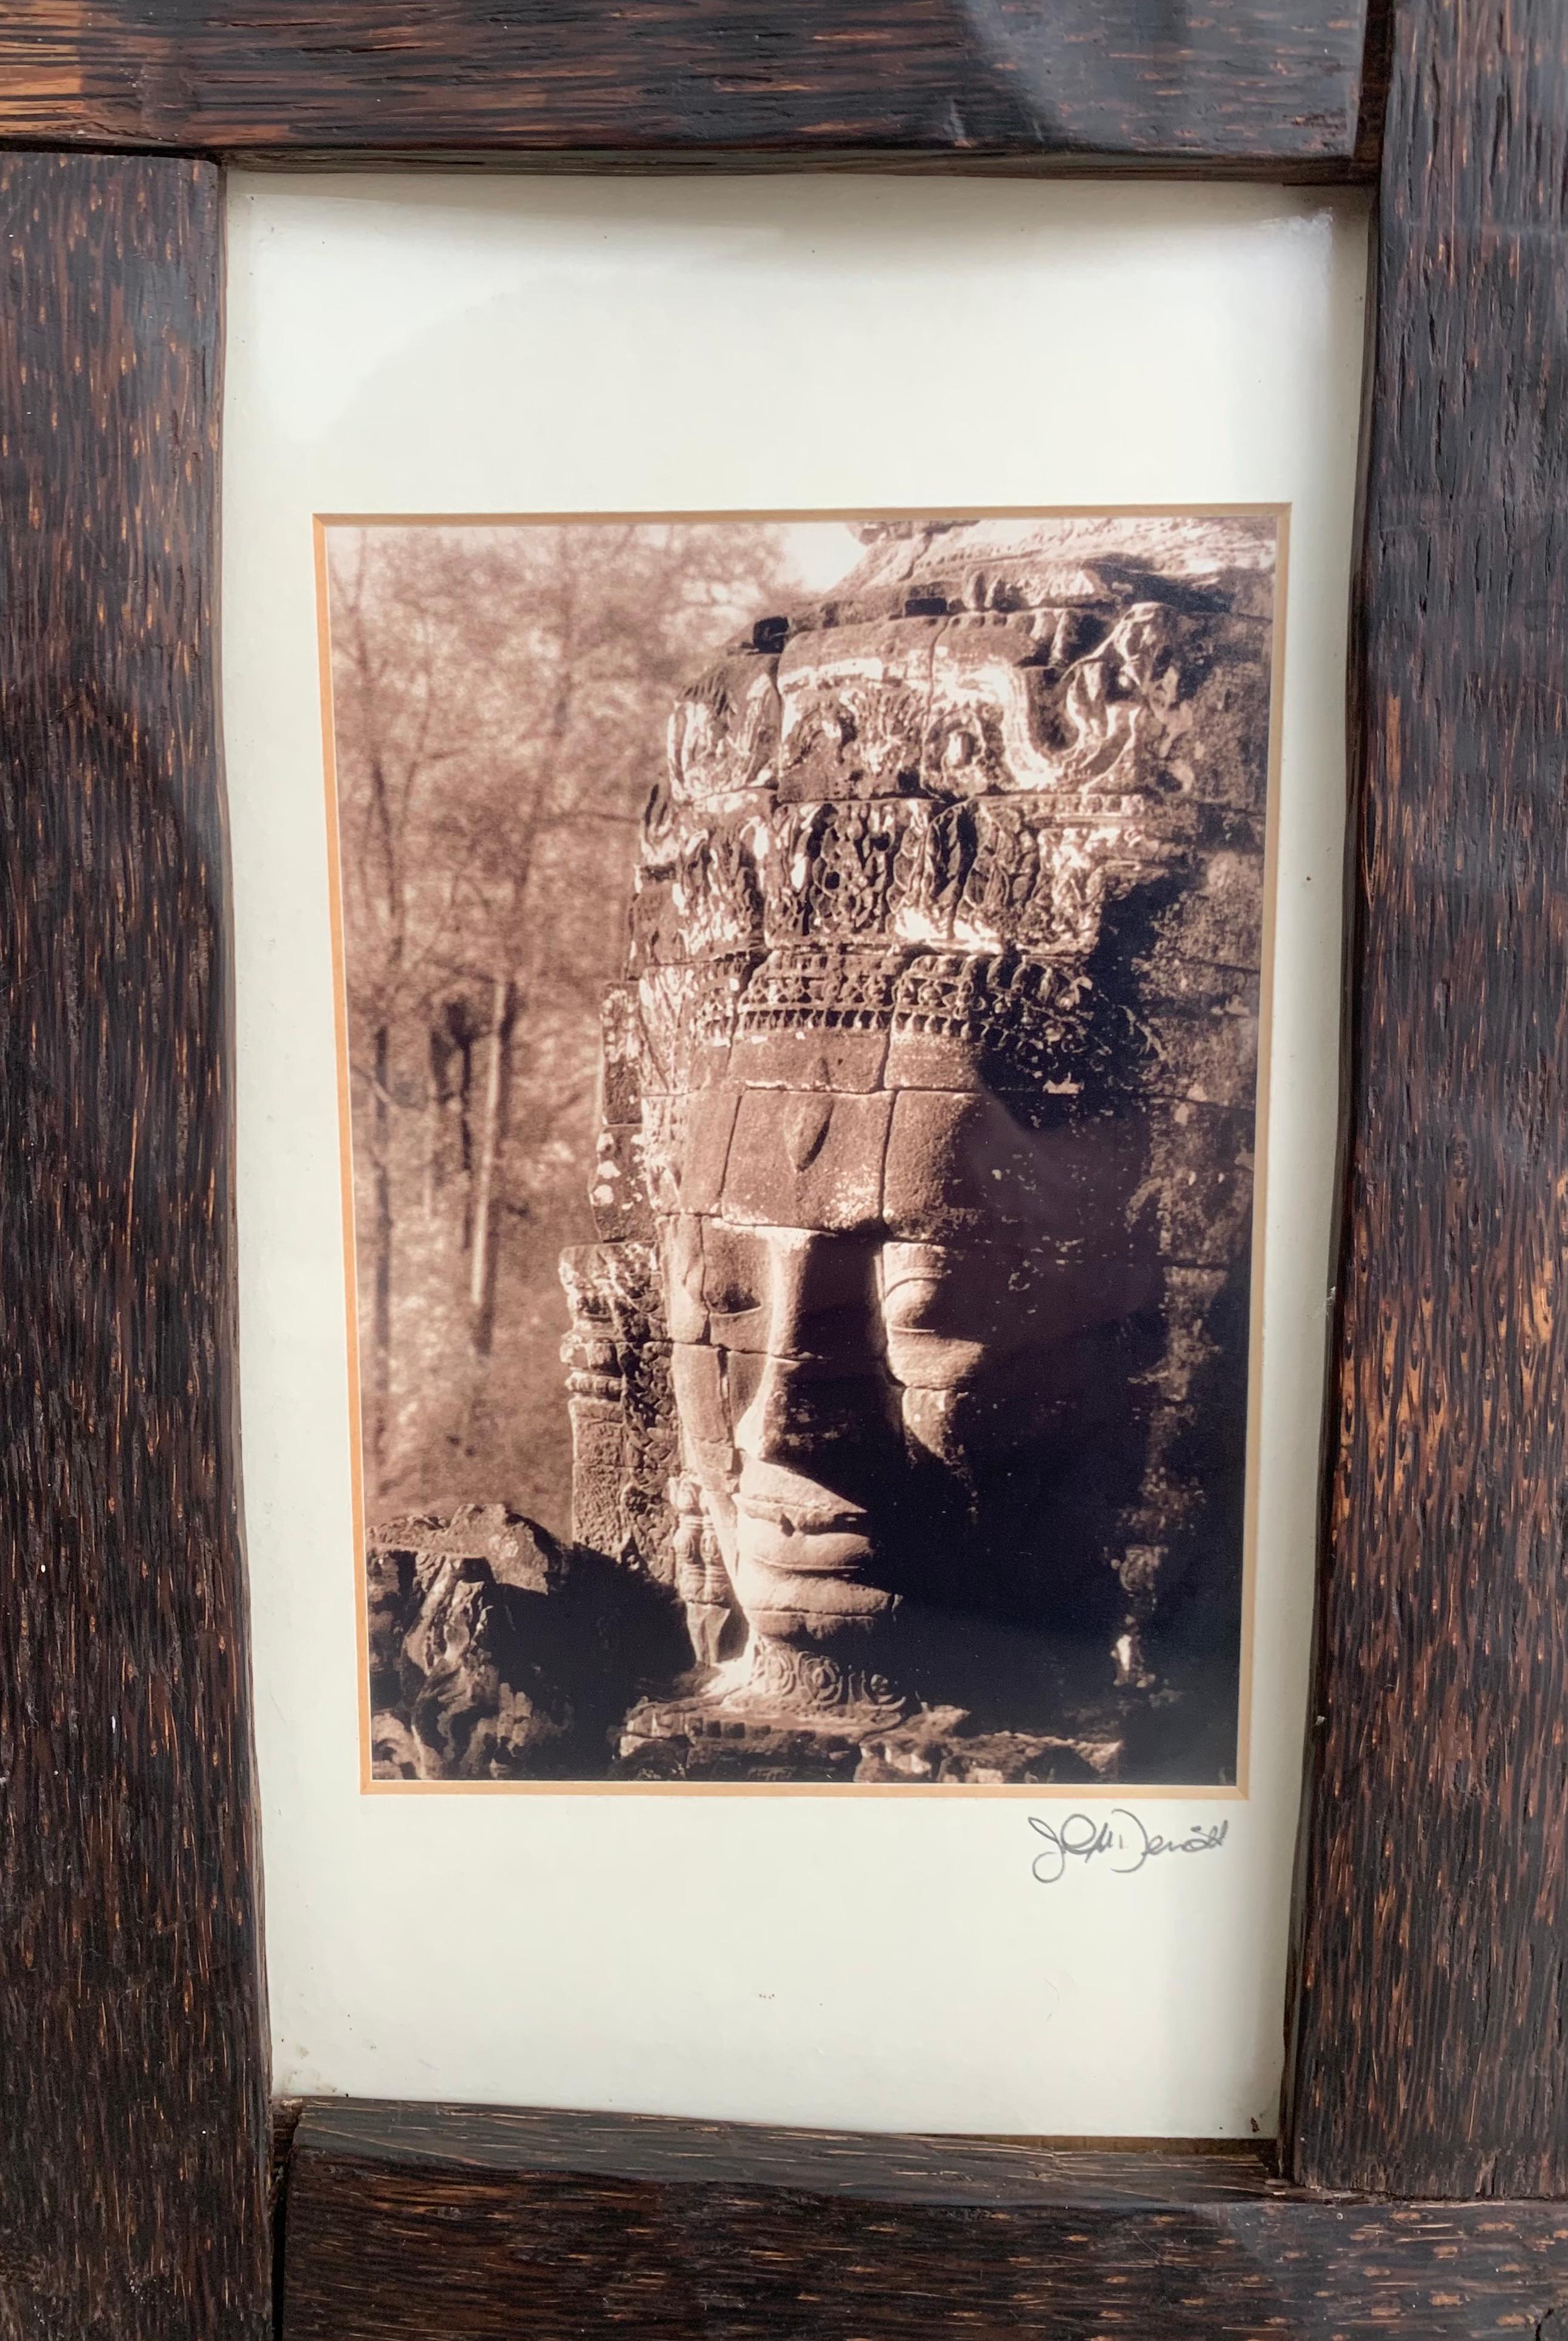 Ein Vintage-Foto aus Kambodscha, gerahmt in einem Rahmen aus Palmenholz und Glas.

Abmessungen: Höhe 38cm x Breite 27cm x Tiefe 0,05cm.
    